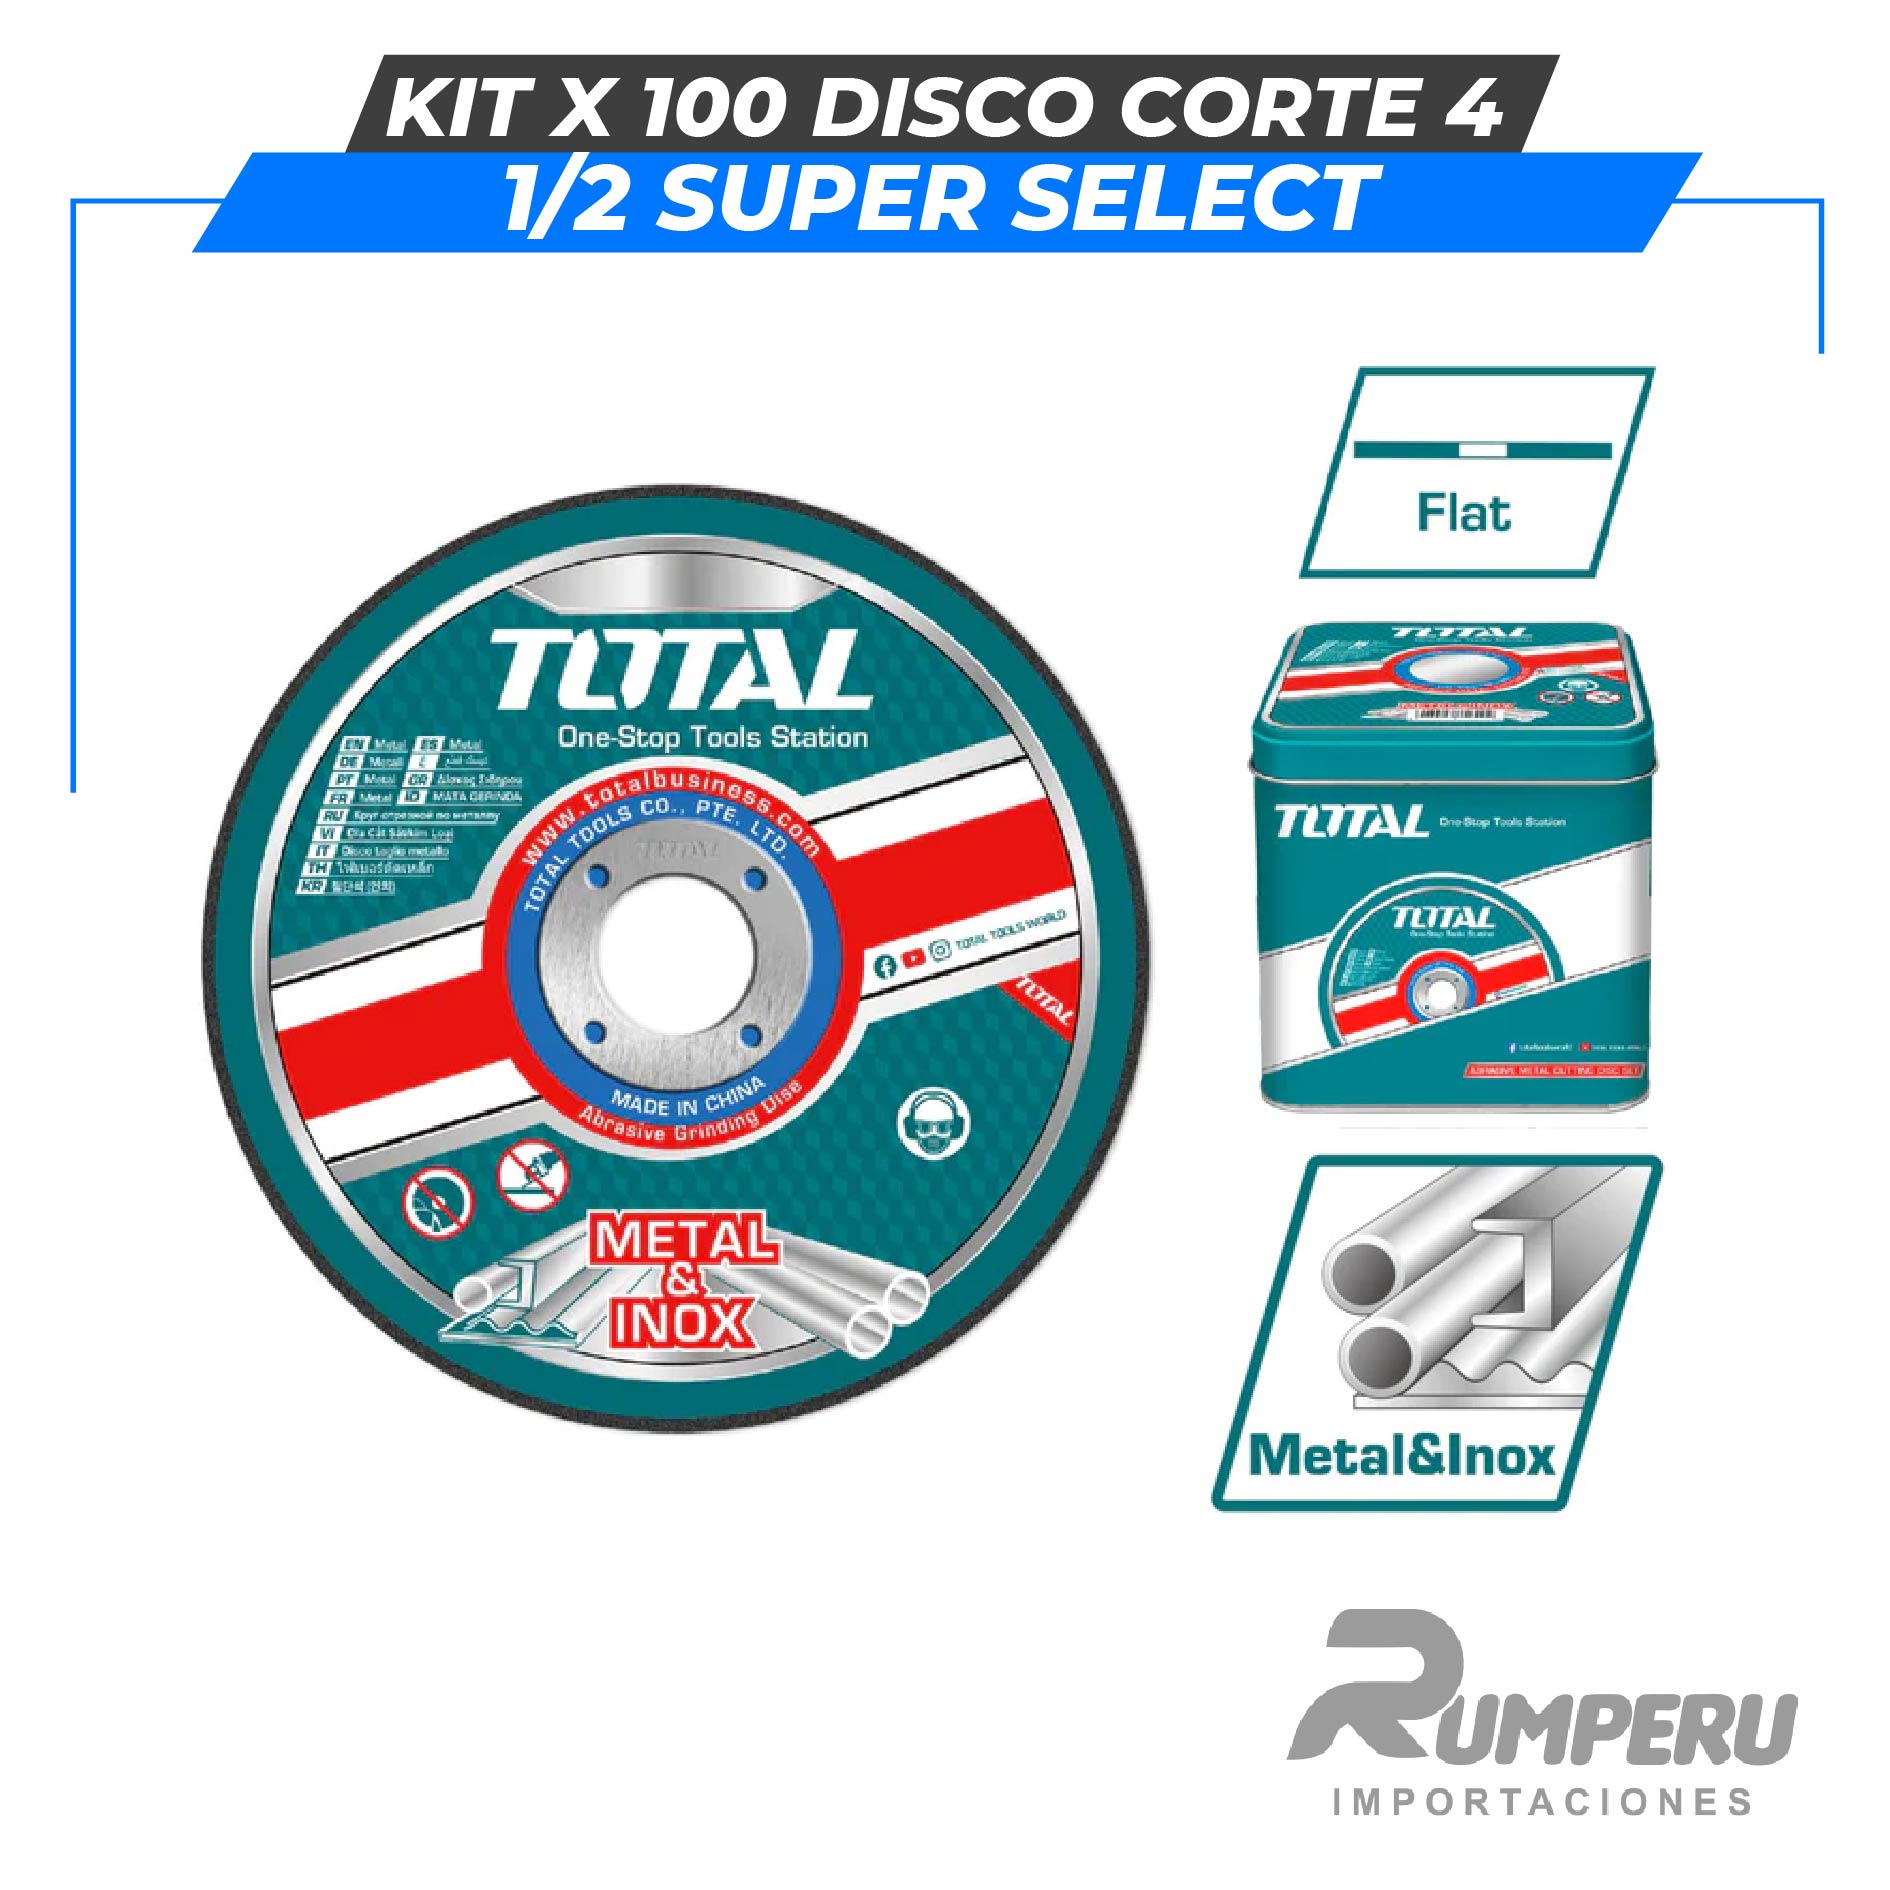 Kit x 100 Disco corte 4 1/2" SUPER SELECTSet de accesorios 120 pcs TOTAL